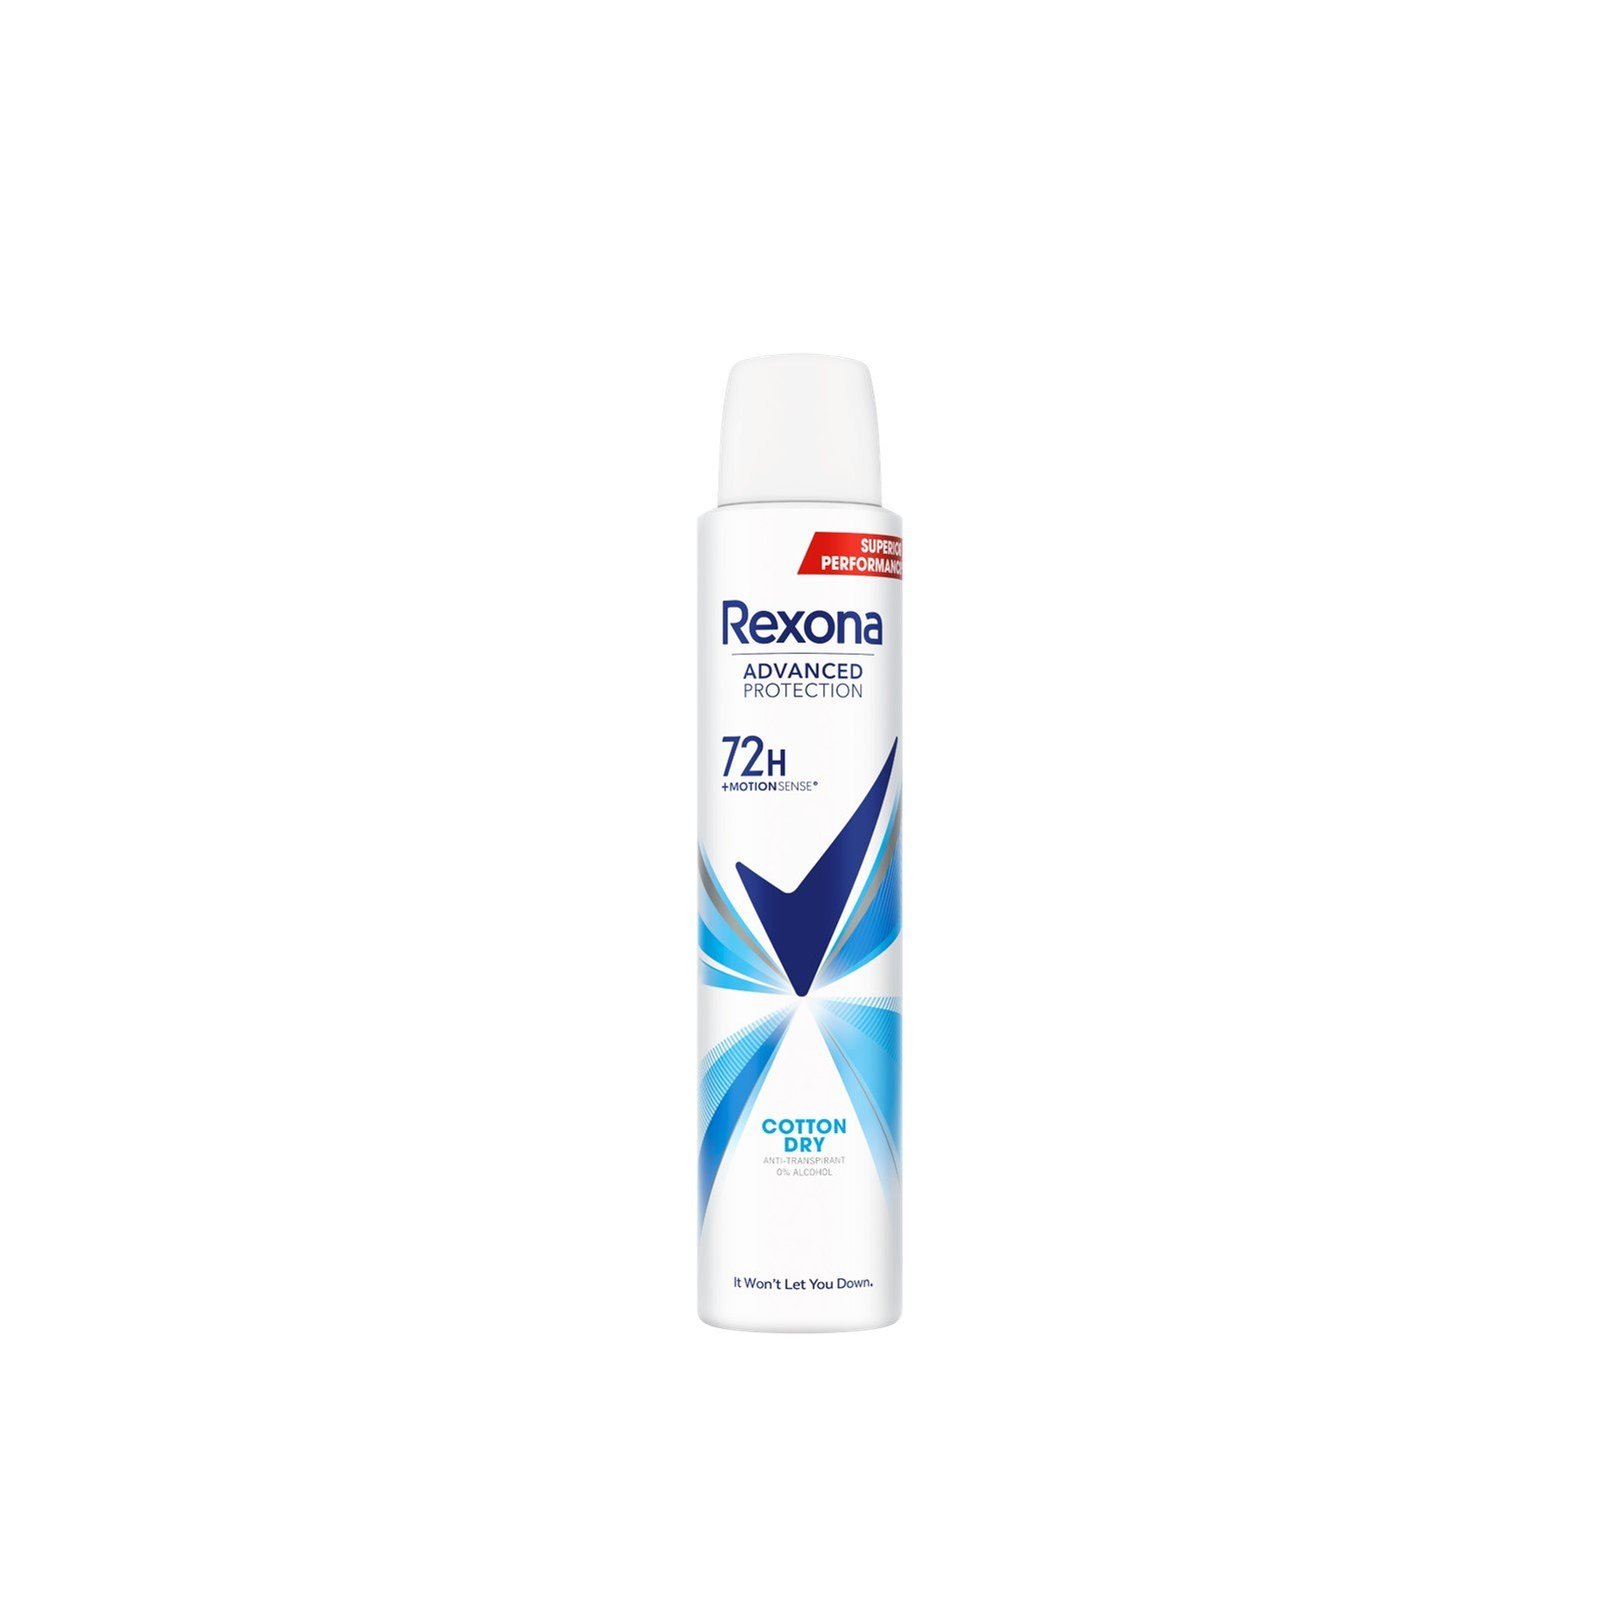 Rexona Advanced Protection Cotton Dry 72h Anti-Perspirant Spray 200ml (6.76 fl oz)